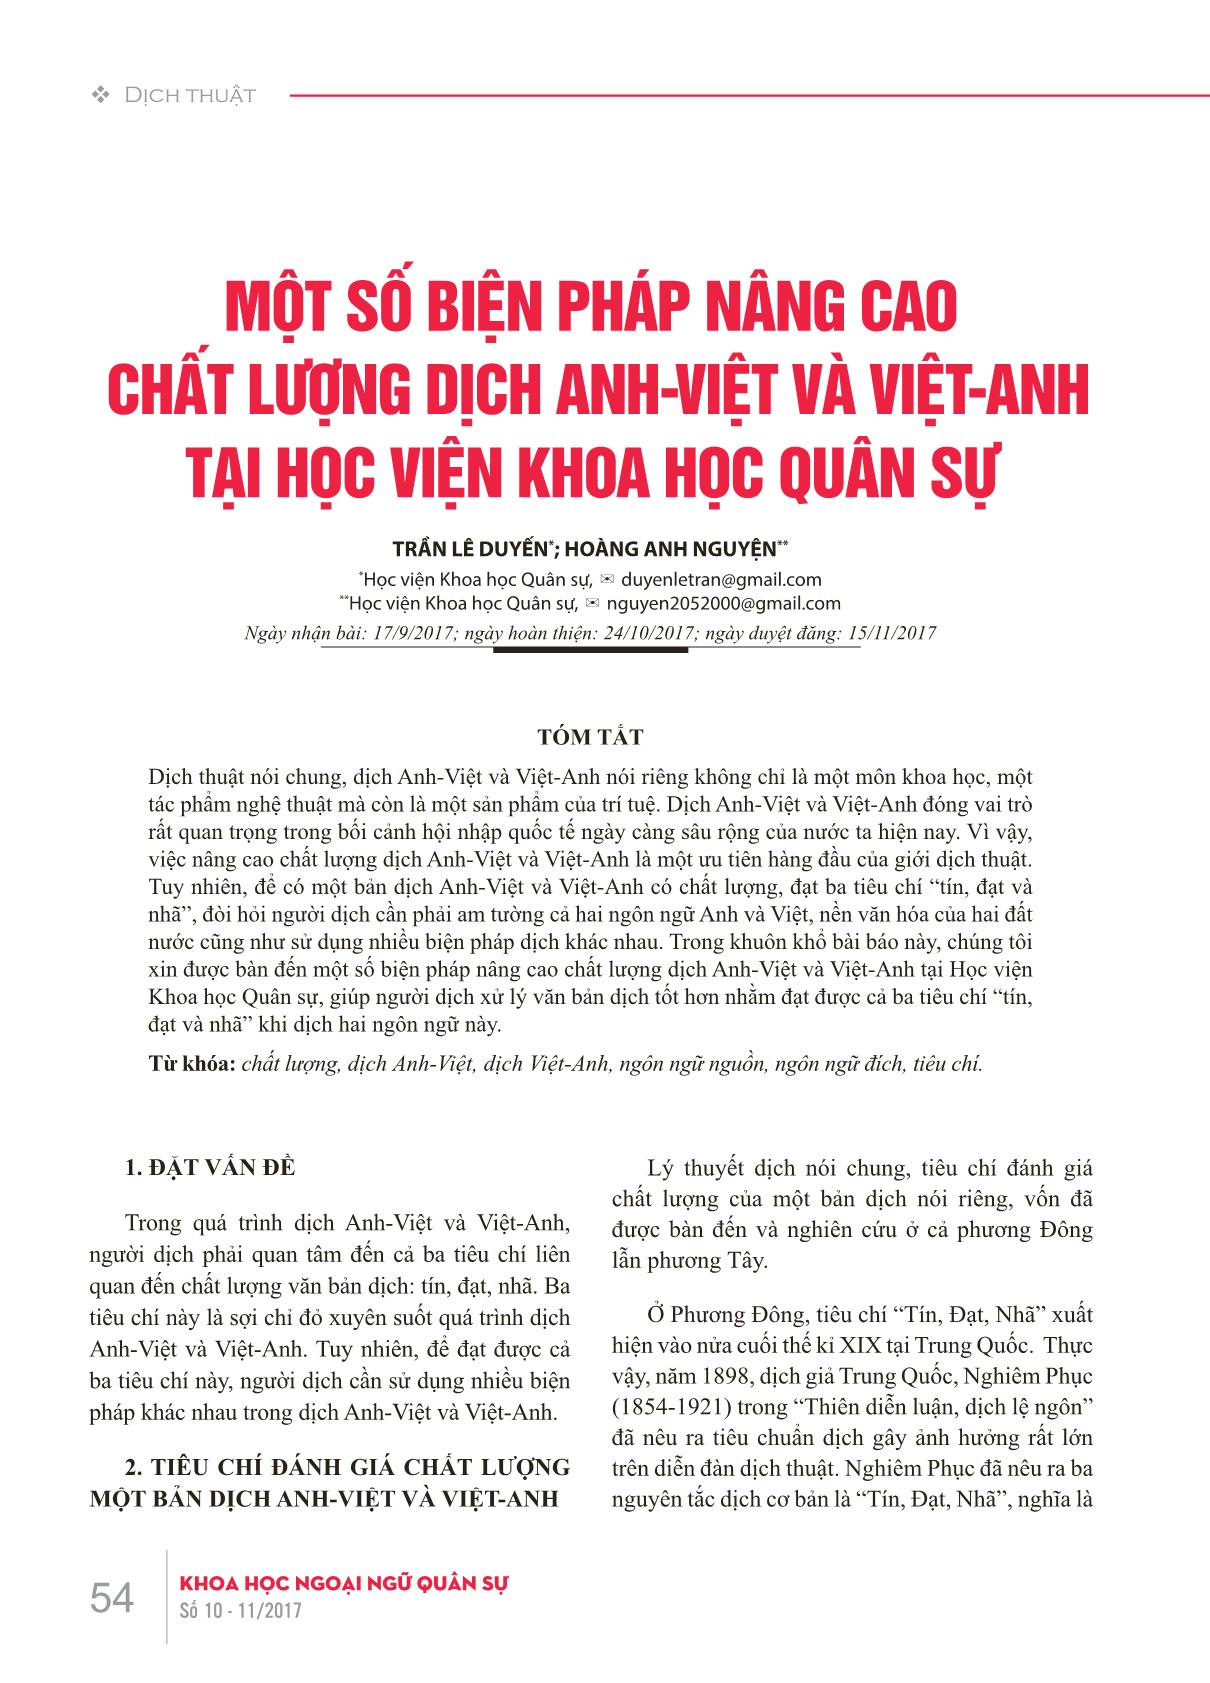 Một số biện pháp nâng cao chất lượng dịch Anh-Việt và Việt-Anh tại Học viện Khoa học Quân sự trang 1